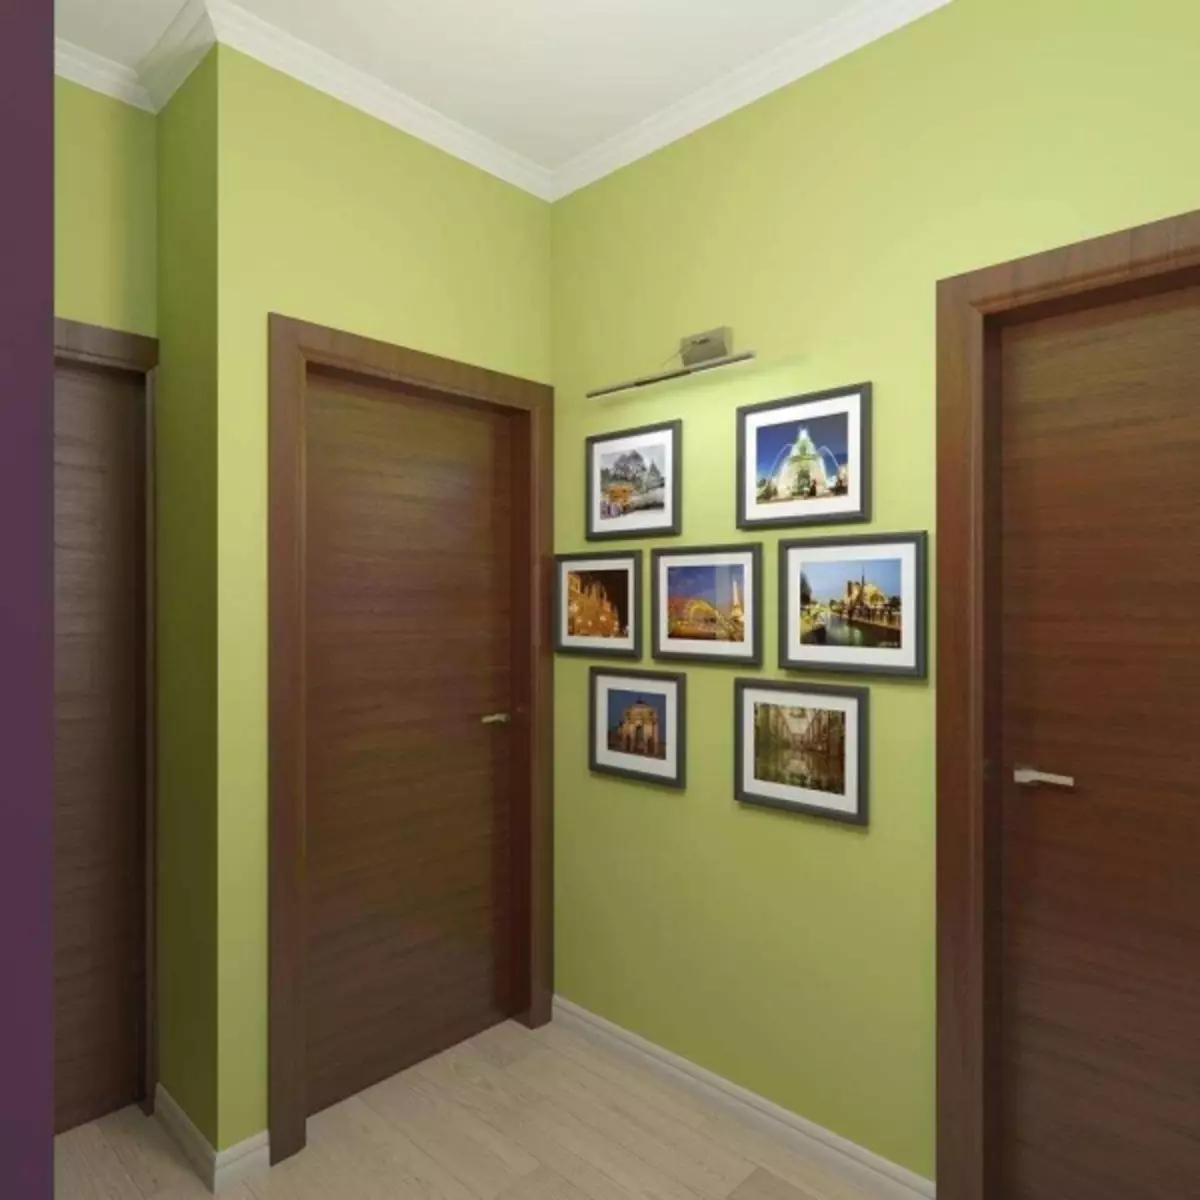 Wallpaper in einem Korridor in der Wohnung Foto: Steinveredelung, für einen kleinen schmalen Korridor, der in Kraushchev entscheidet, für die Flüssigkeiten des Flurs, Video